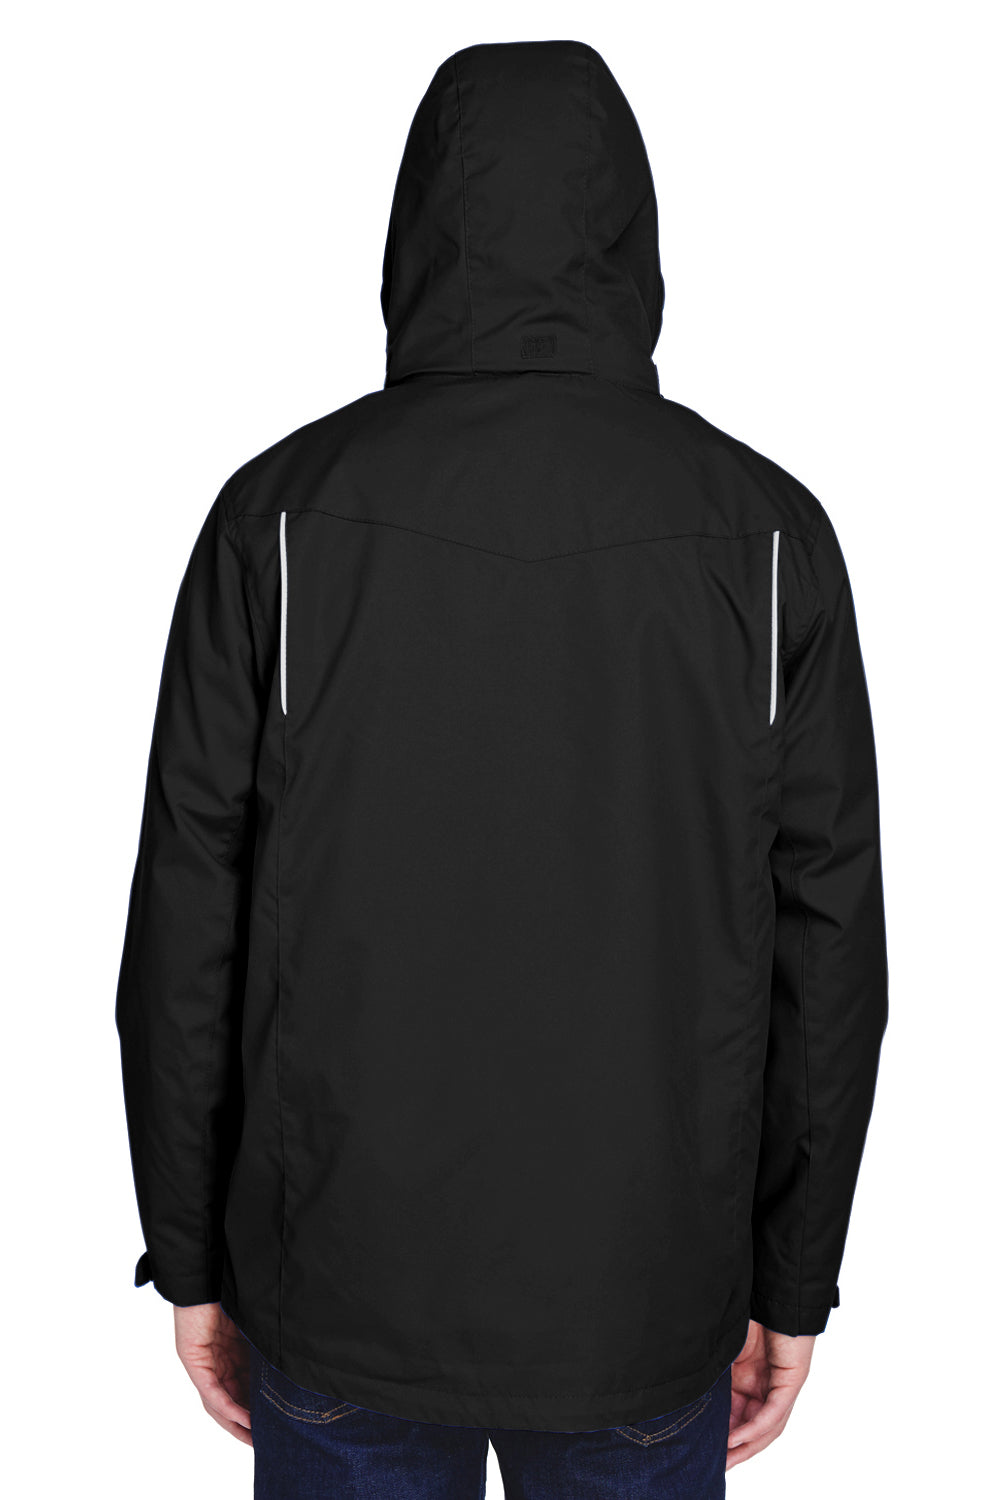 Core 365 88205 Mens Region 3-in-1 Water Resistant Full Zip Hooded Jacket Black Back